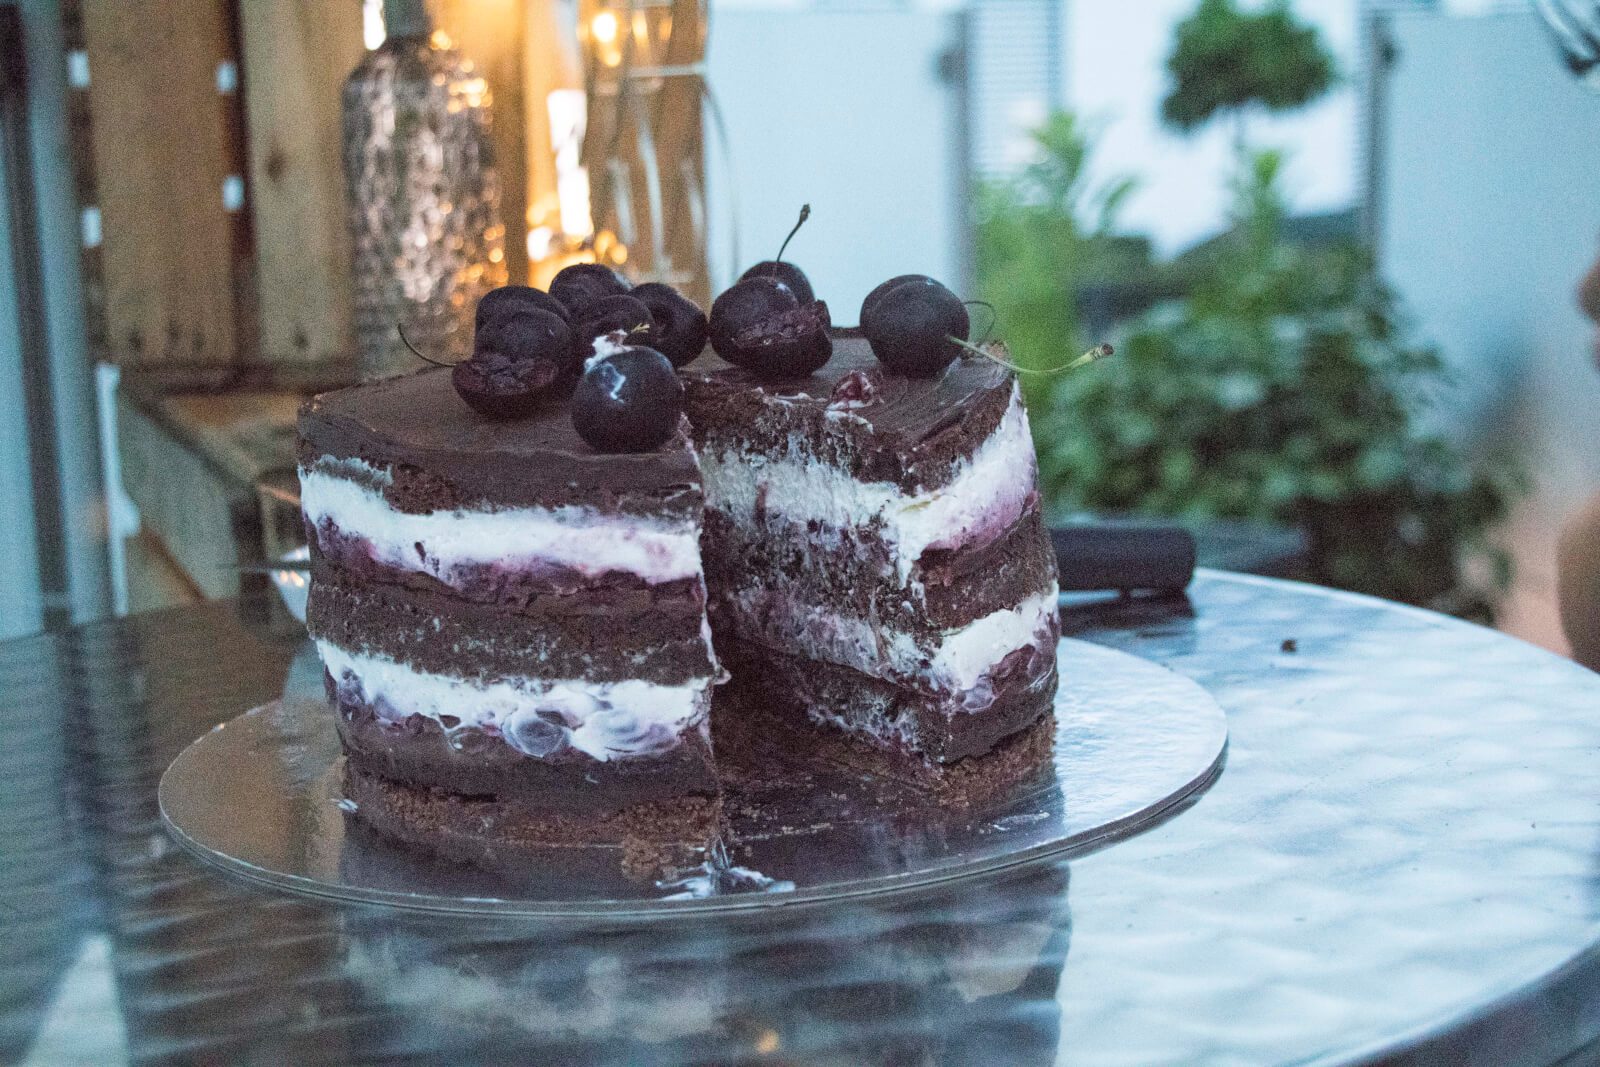 Moderne Schwarzwälder Kirschtorte - Coucoucake - Cake And Baking Blog verwandt mit Schwarzwälder Kirschtorte Modern